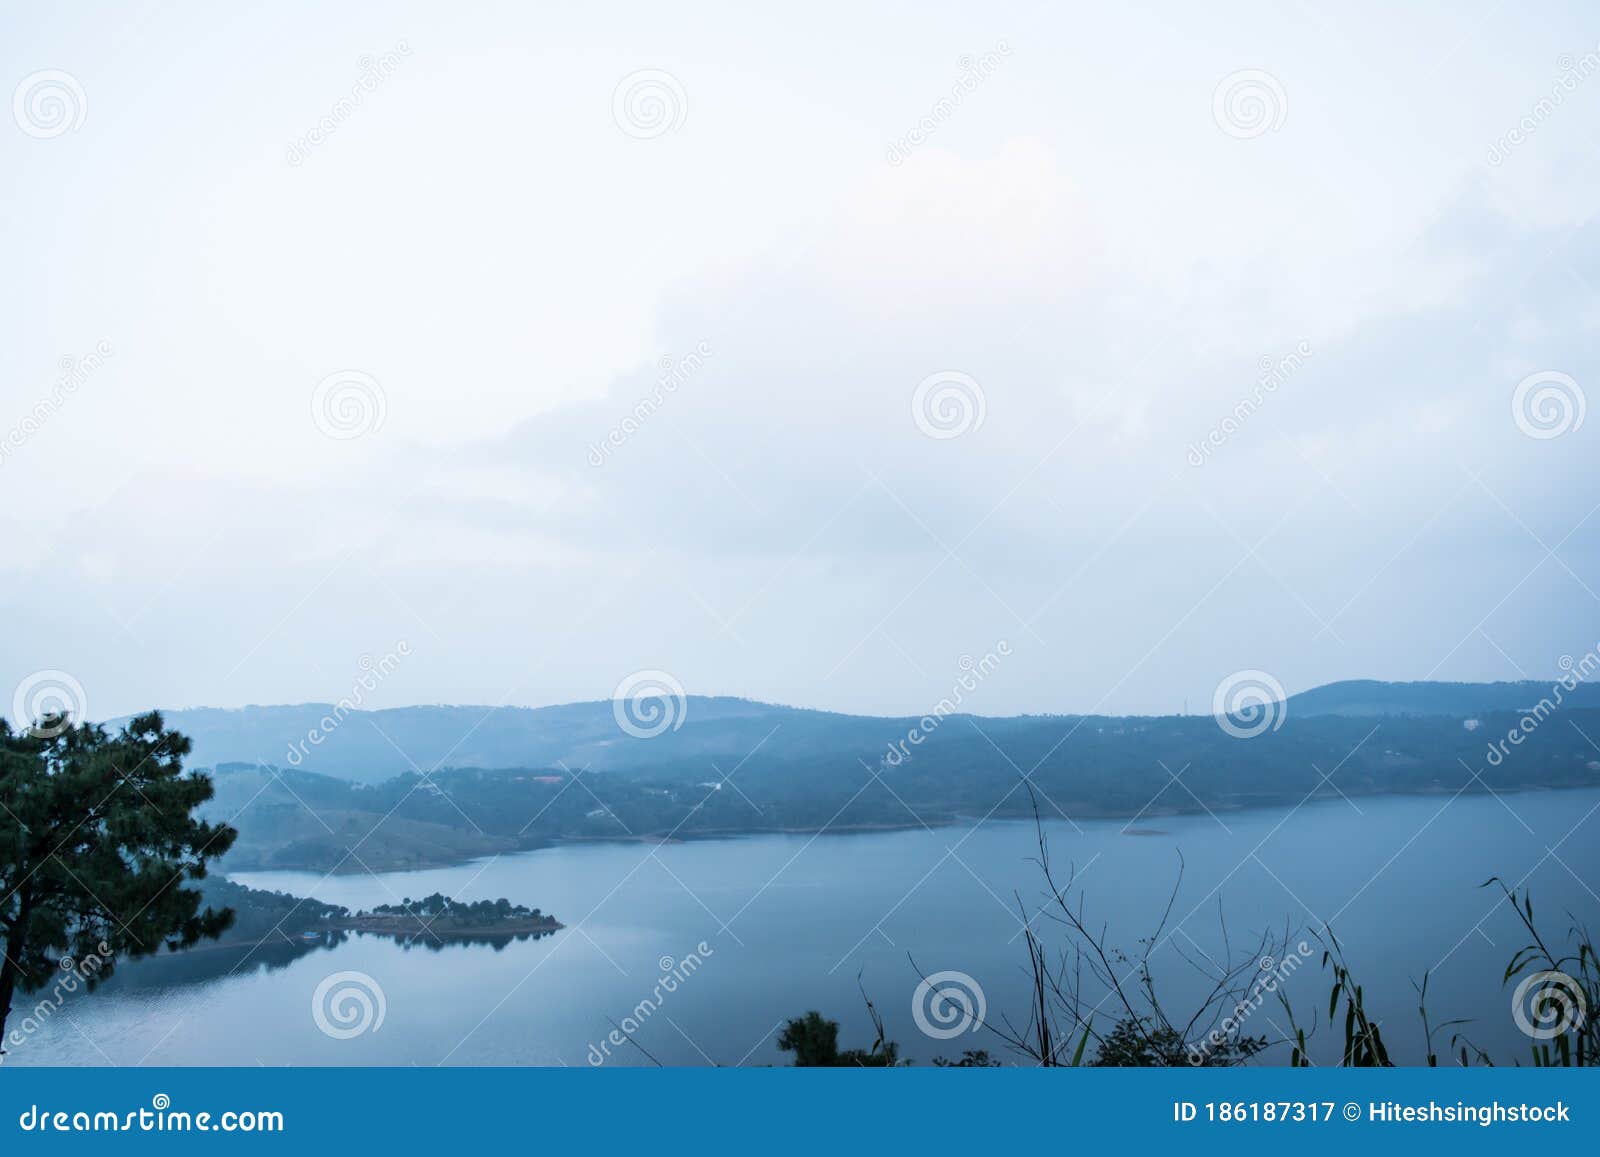 Short Story(folktale) of Umiam Lake, Shillong, Meghalaya, India – Lonely  India